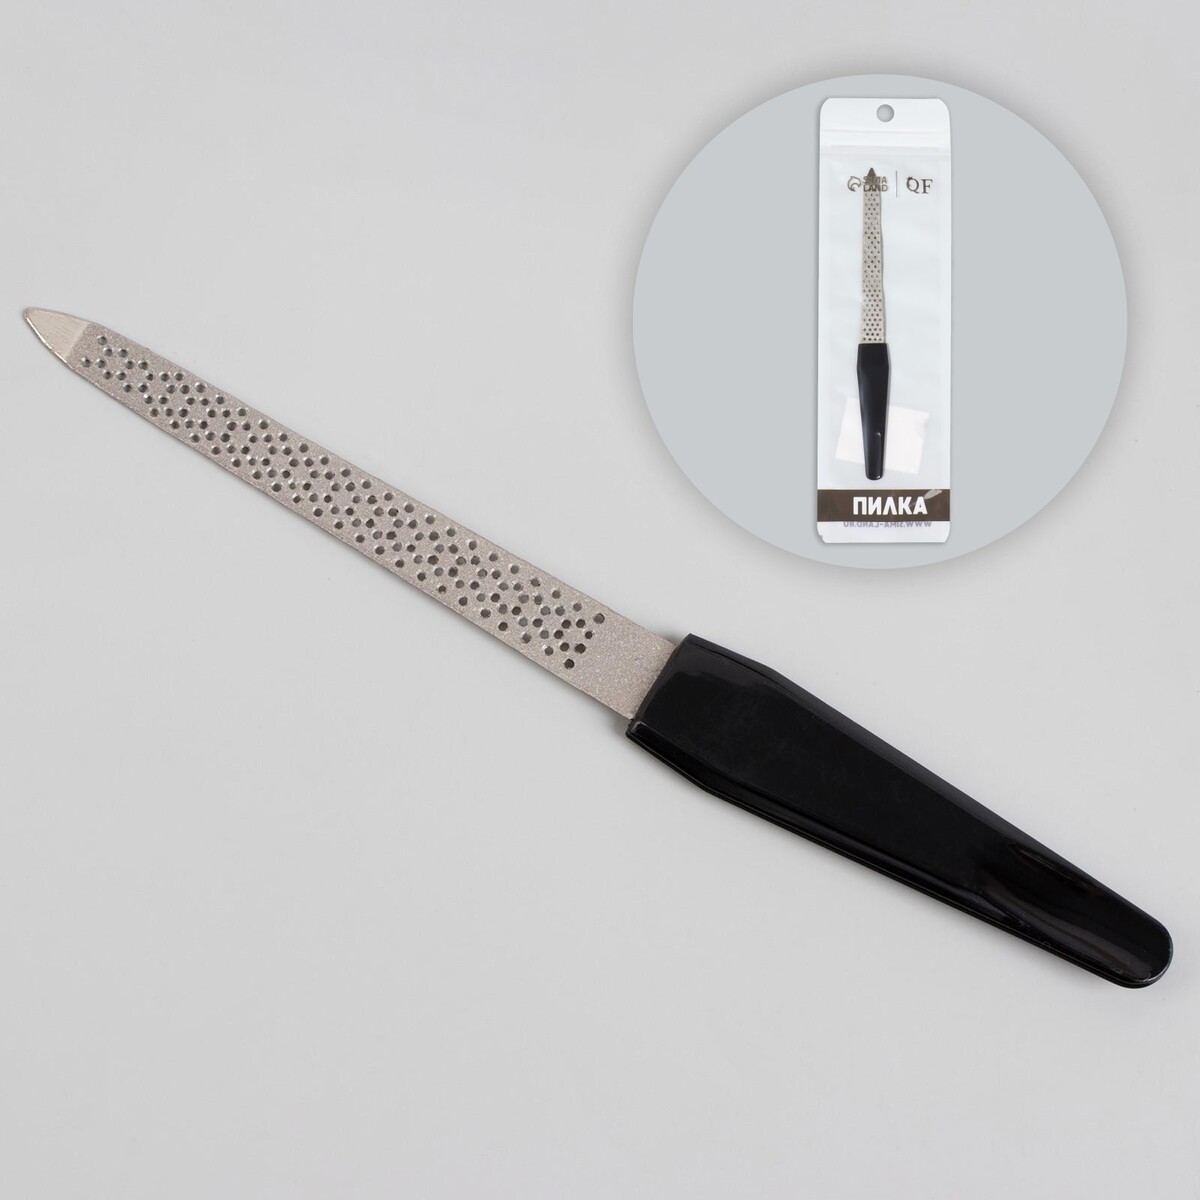 Пилка металлическая для ногтей, перфорированная, 15 см, цвет черный пилка металлическая для ногтей 12 см на блистере серебристый